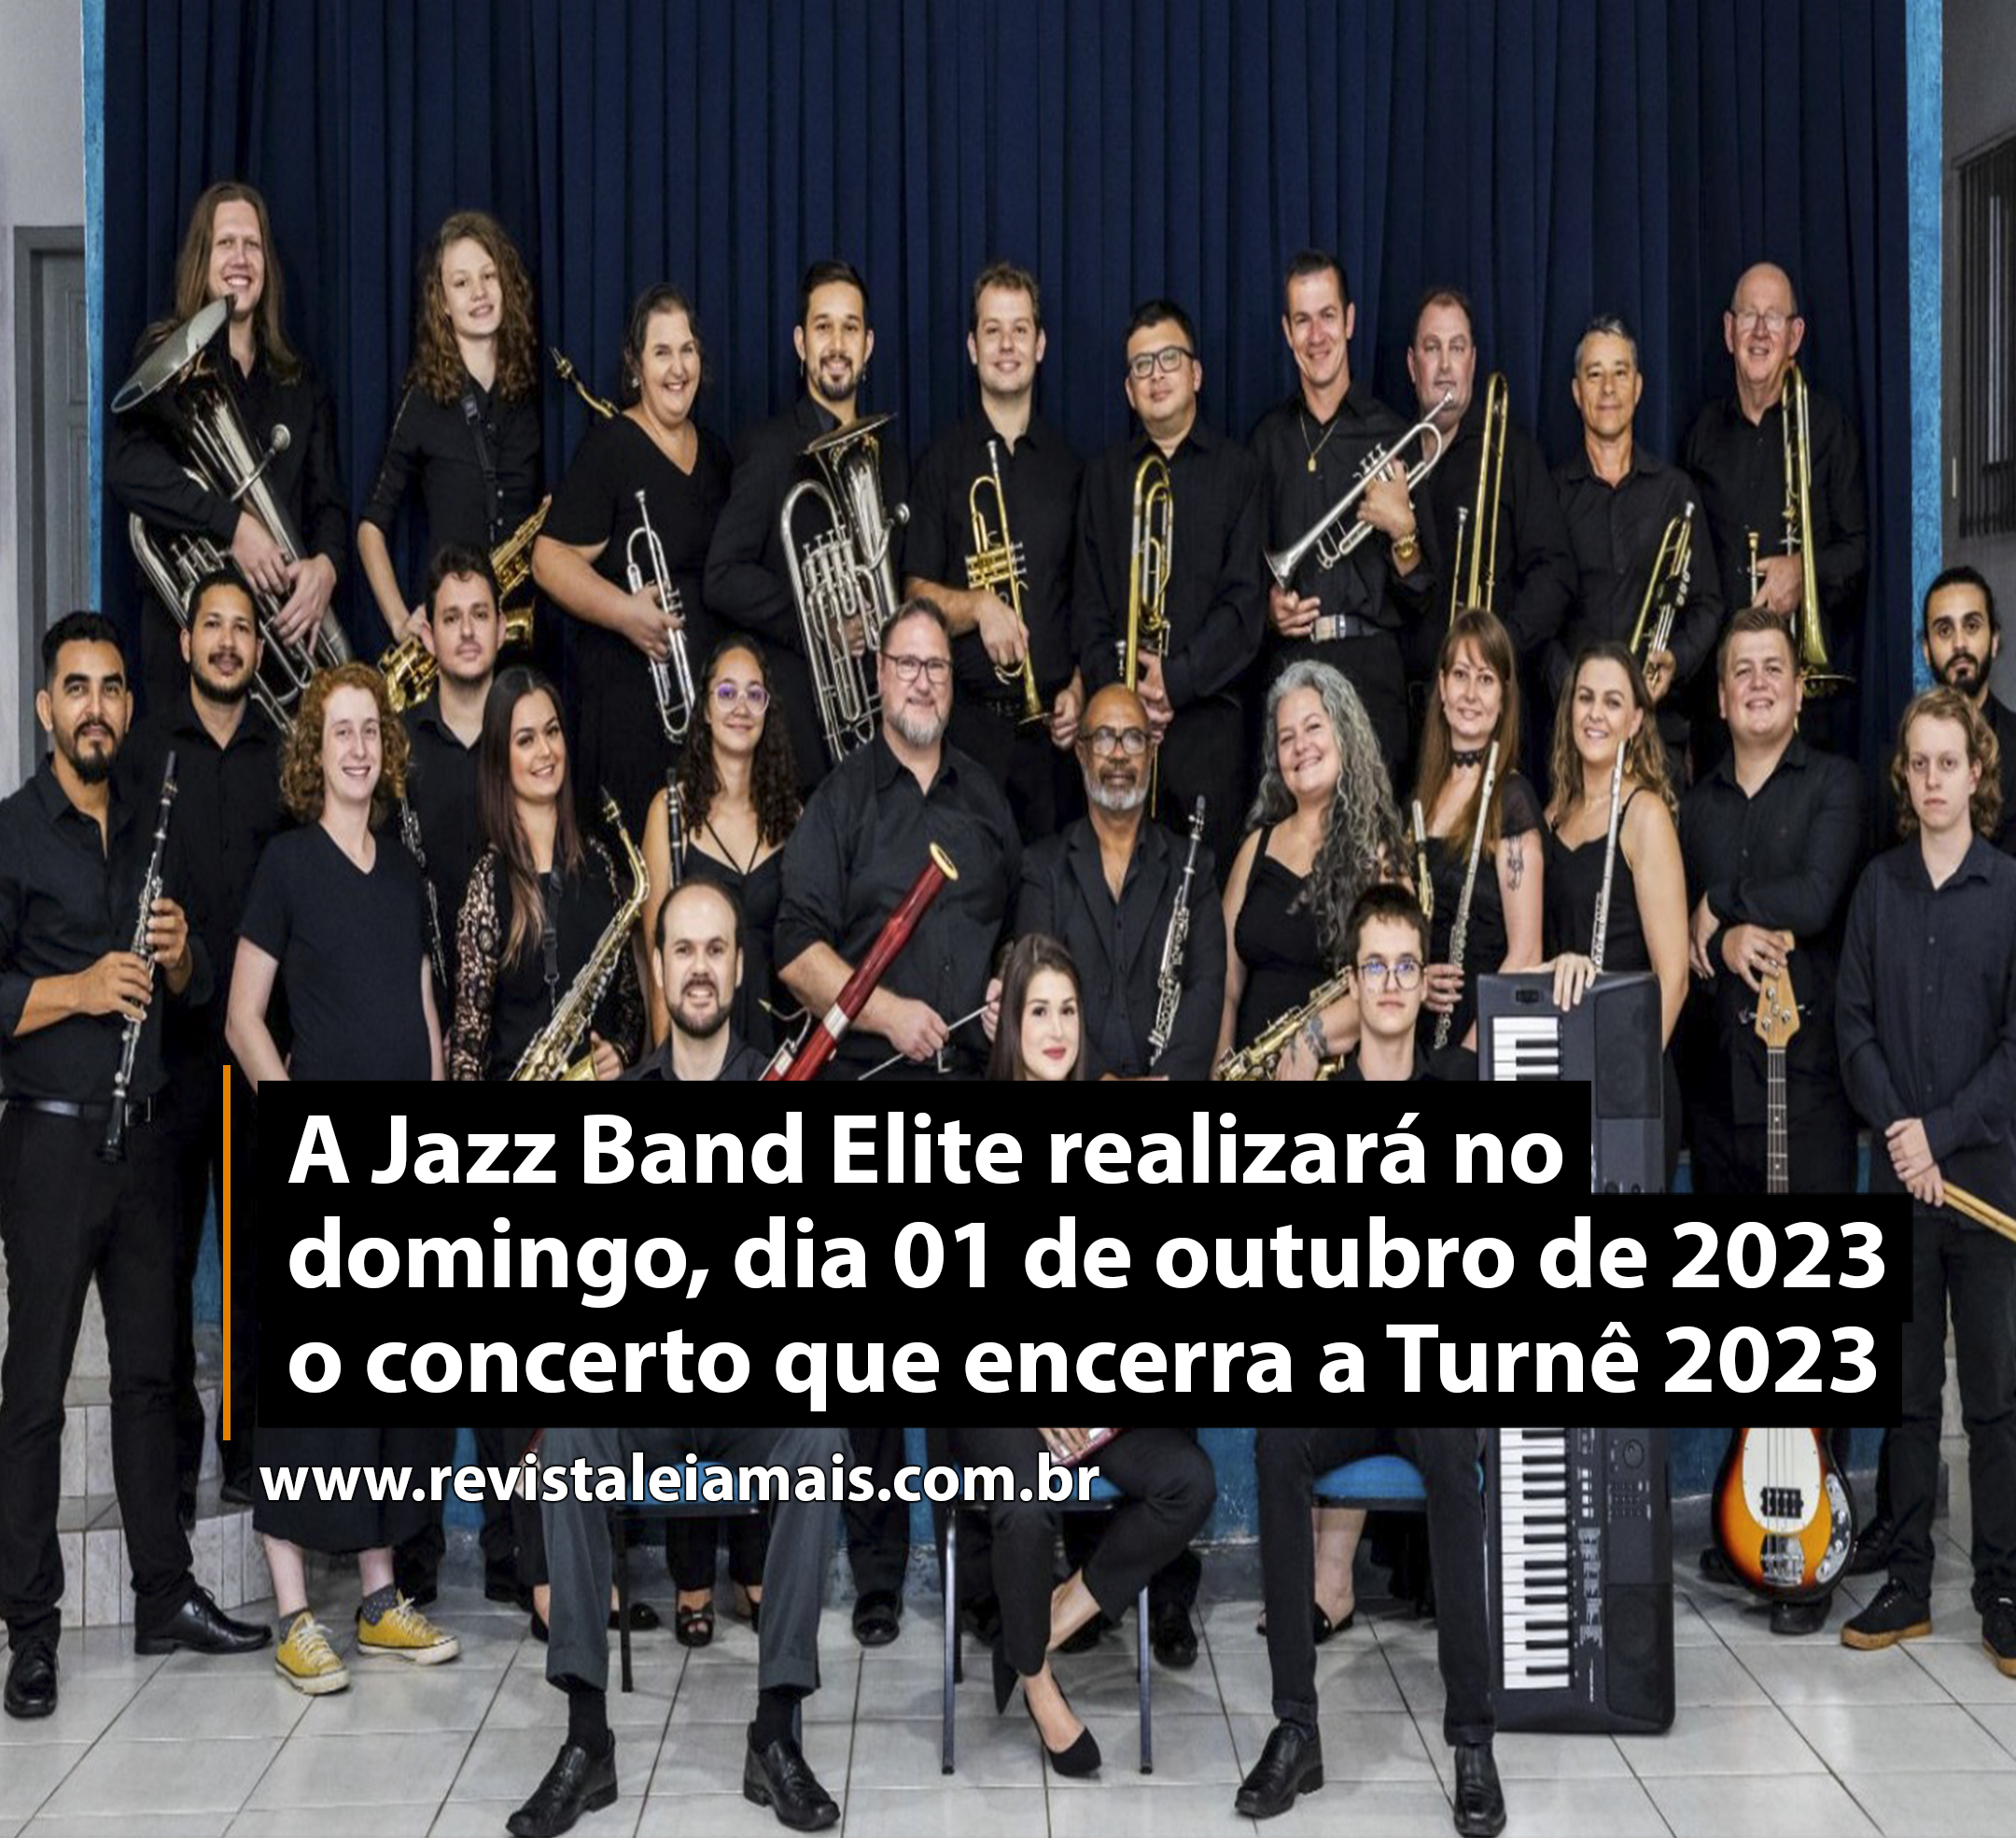 A Jazz Band Elite realizará no domingo, dia 01 de outubro de 2023 o concerto que encerra a Turnê 2023